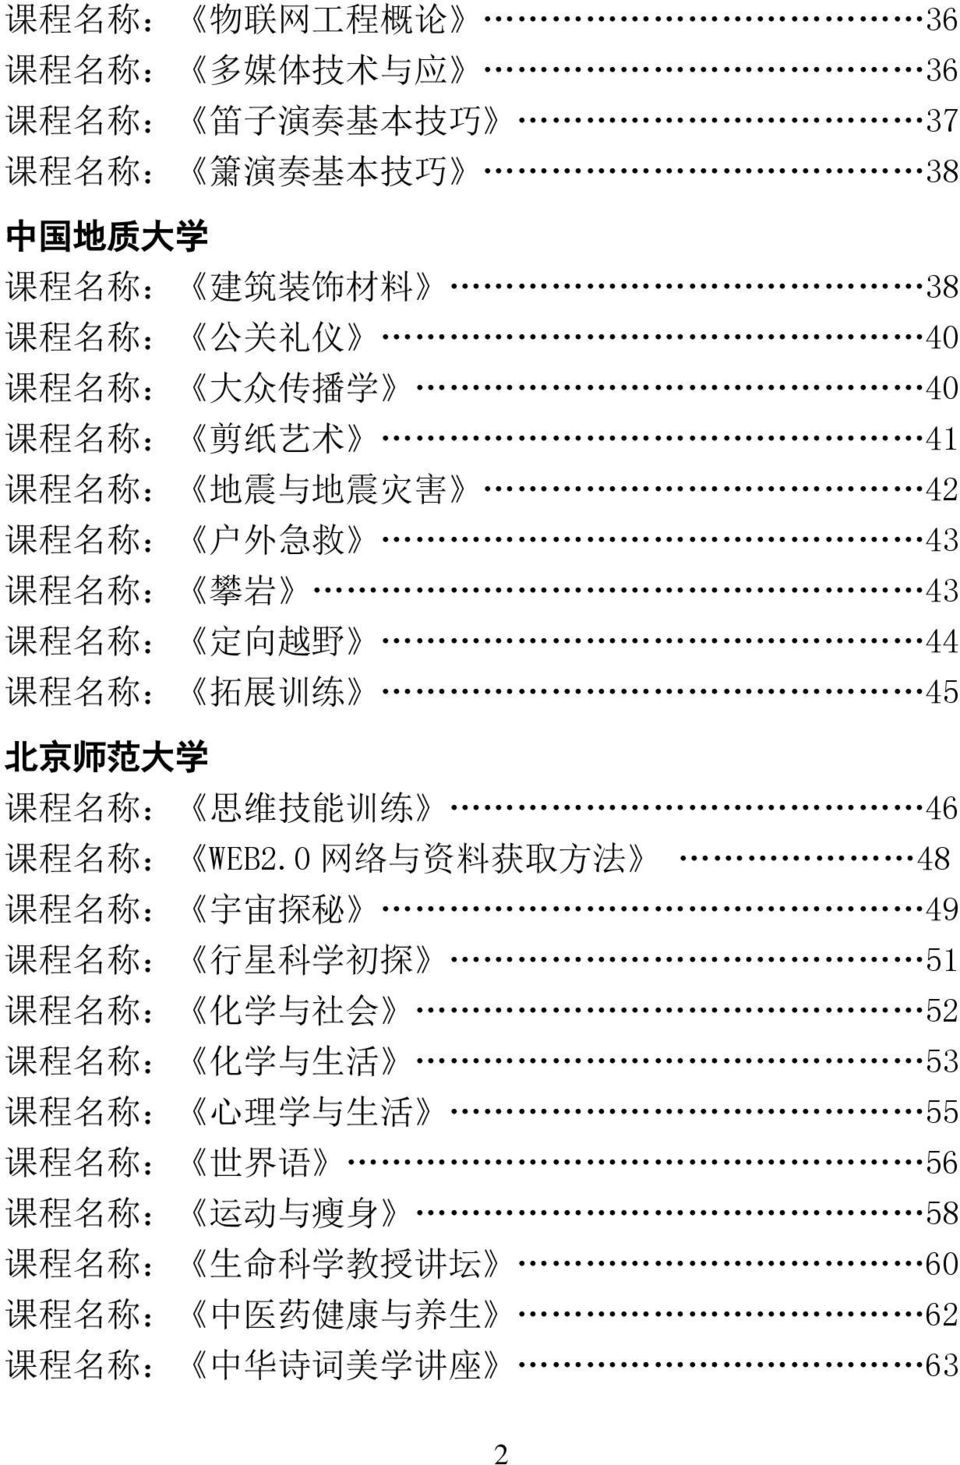 京 师 范 大 学 课 程 名 称 : 思 维 技 能 训 练 46 课 程 名 称 : WEB2.